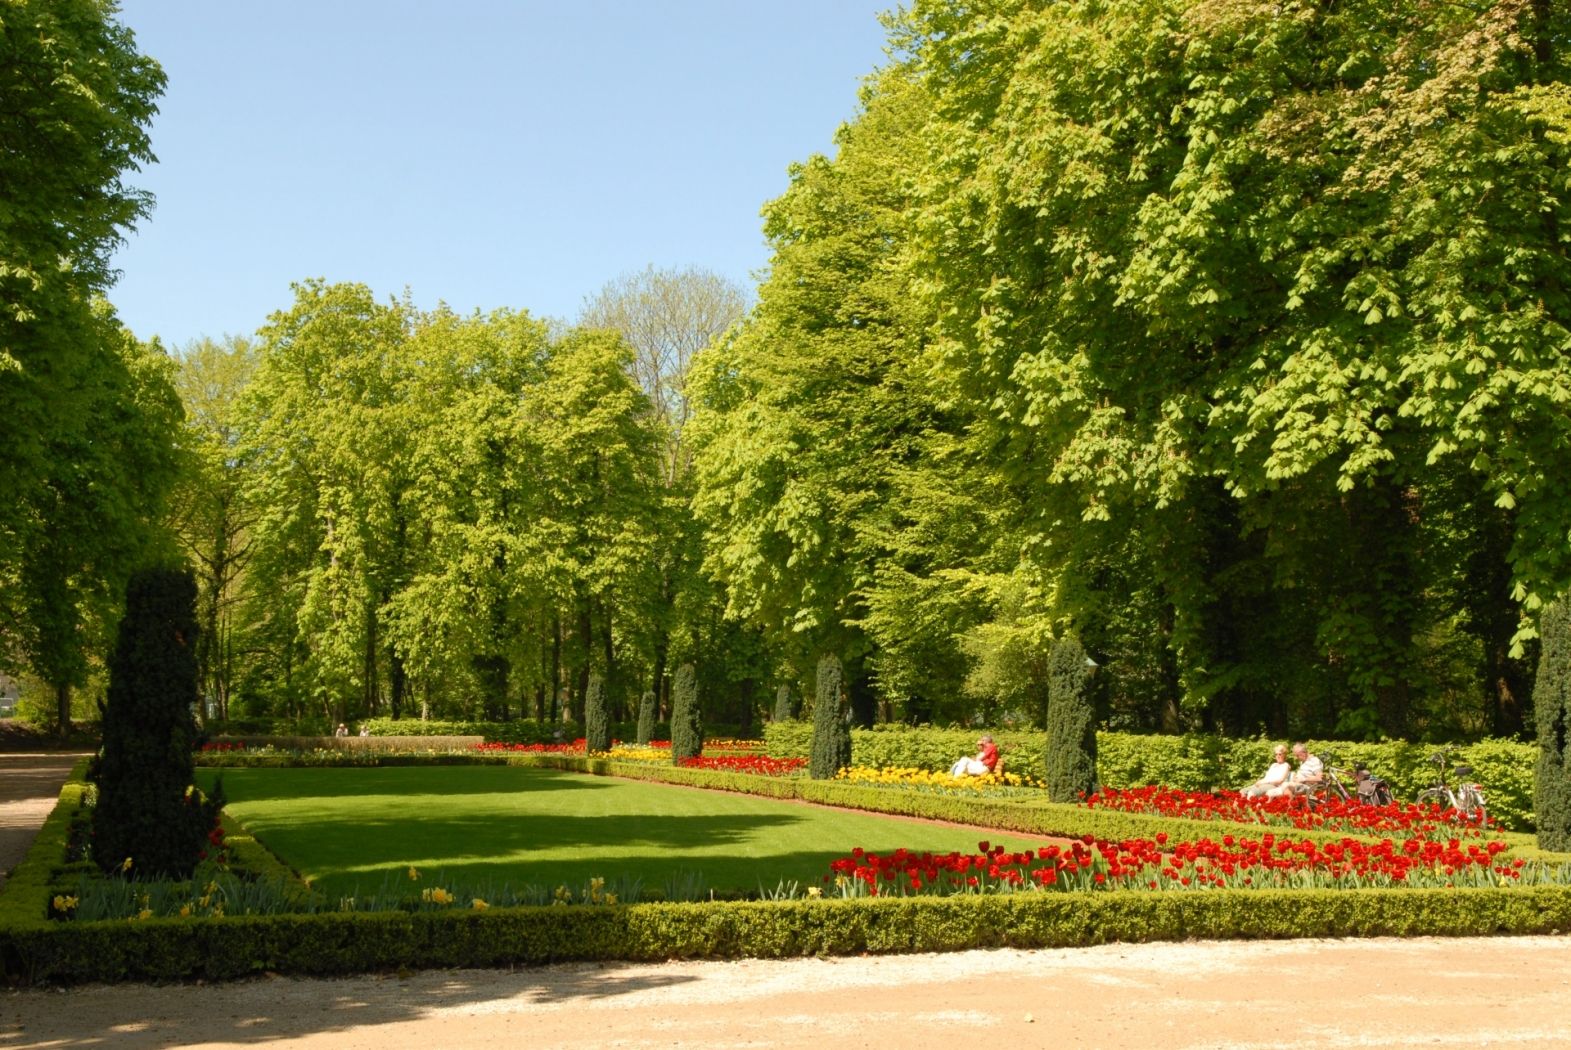 Municipal park with the gardens of Echternach Abbey